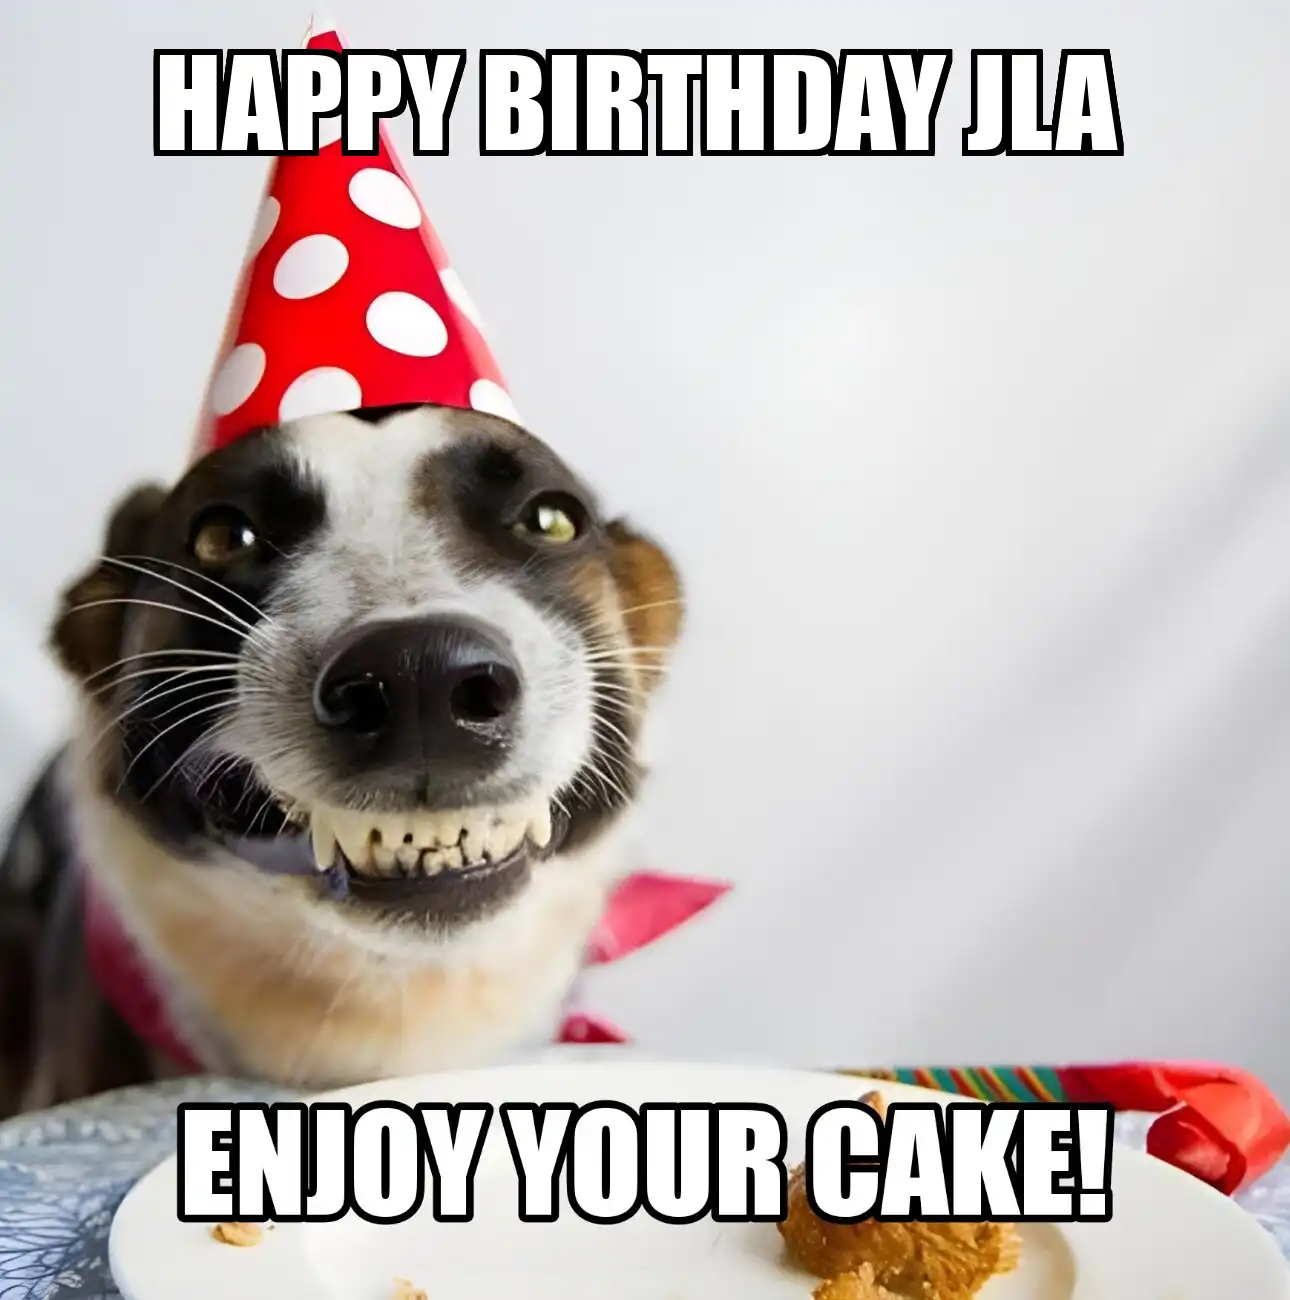 Happy Birthday Jla Enjoy Your Cake Dog Meme